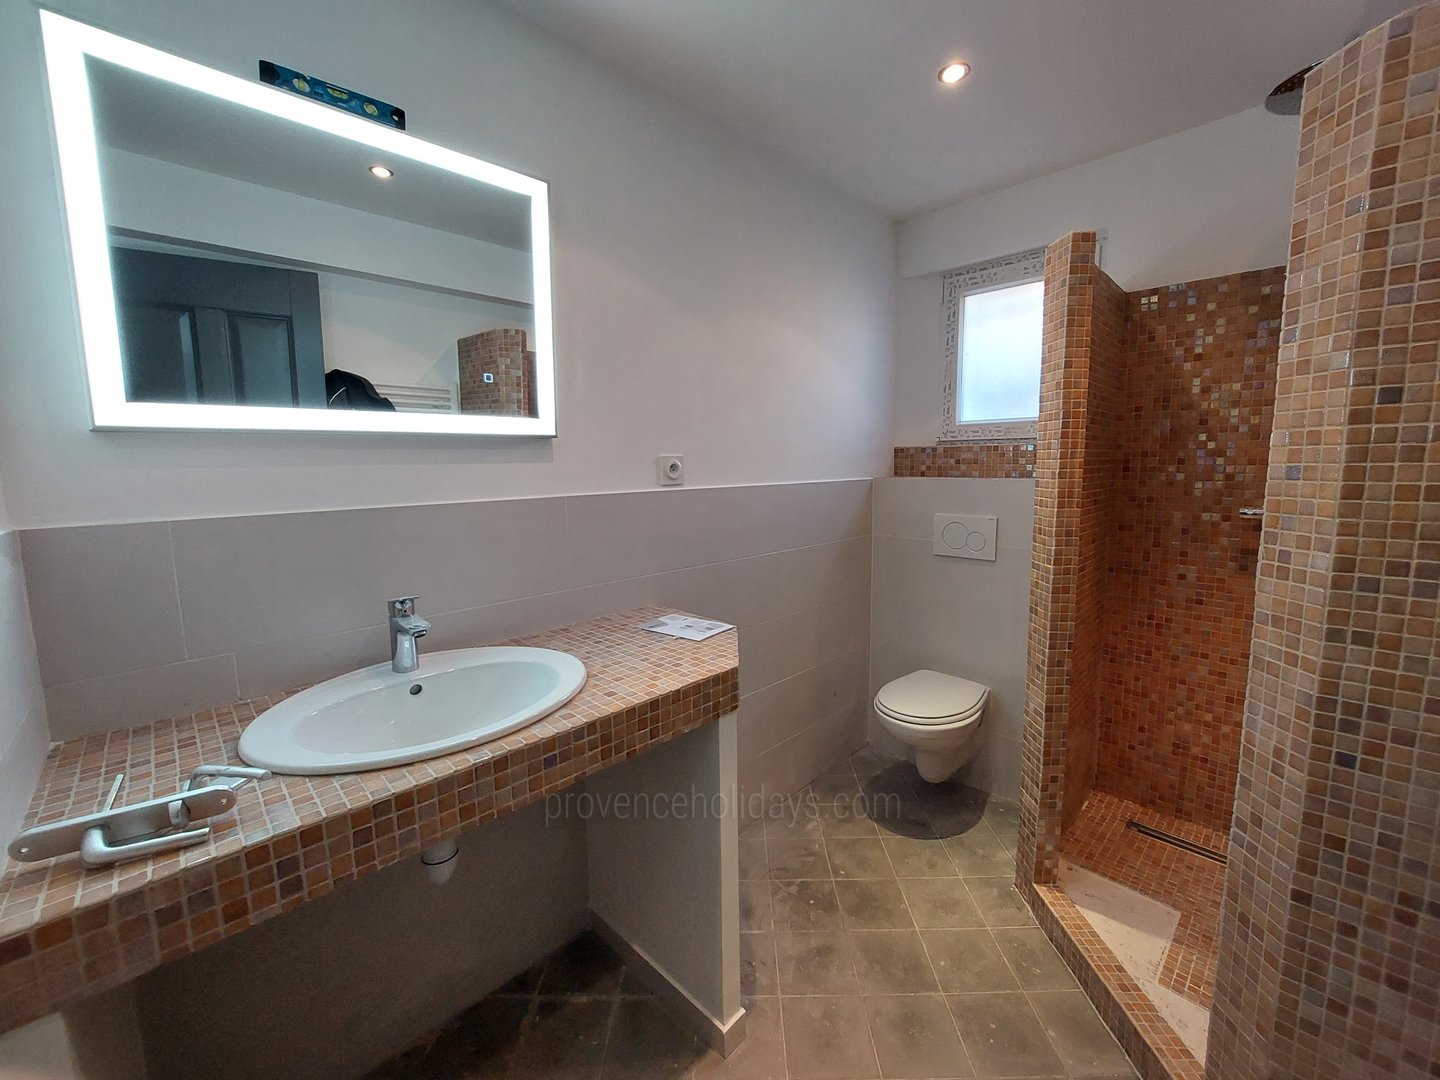 29 - La Maison de Village: Villa: Bathroom - Badkamer 3 Gastenverblijf